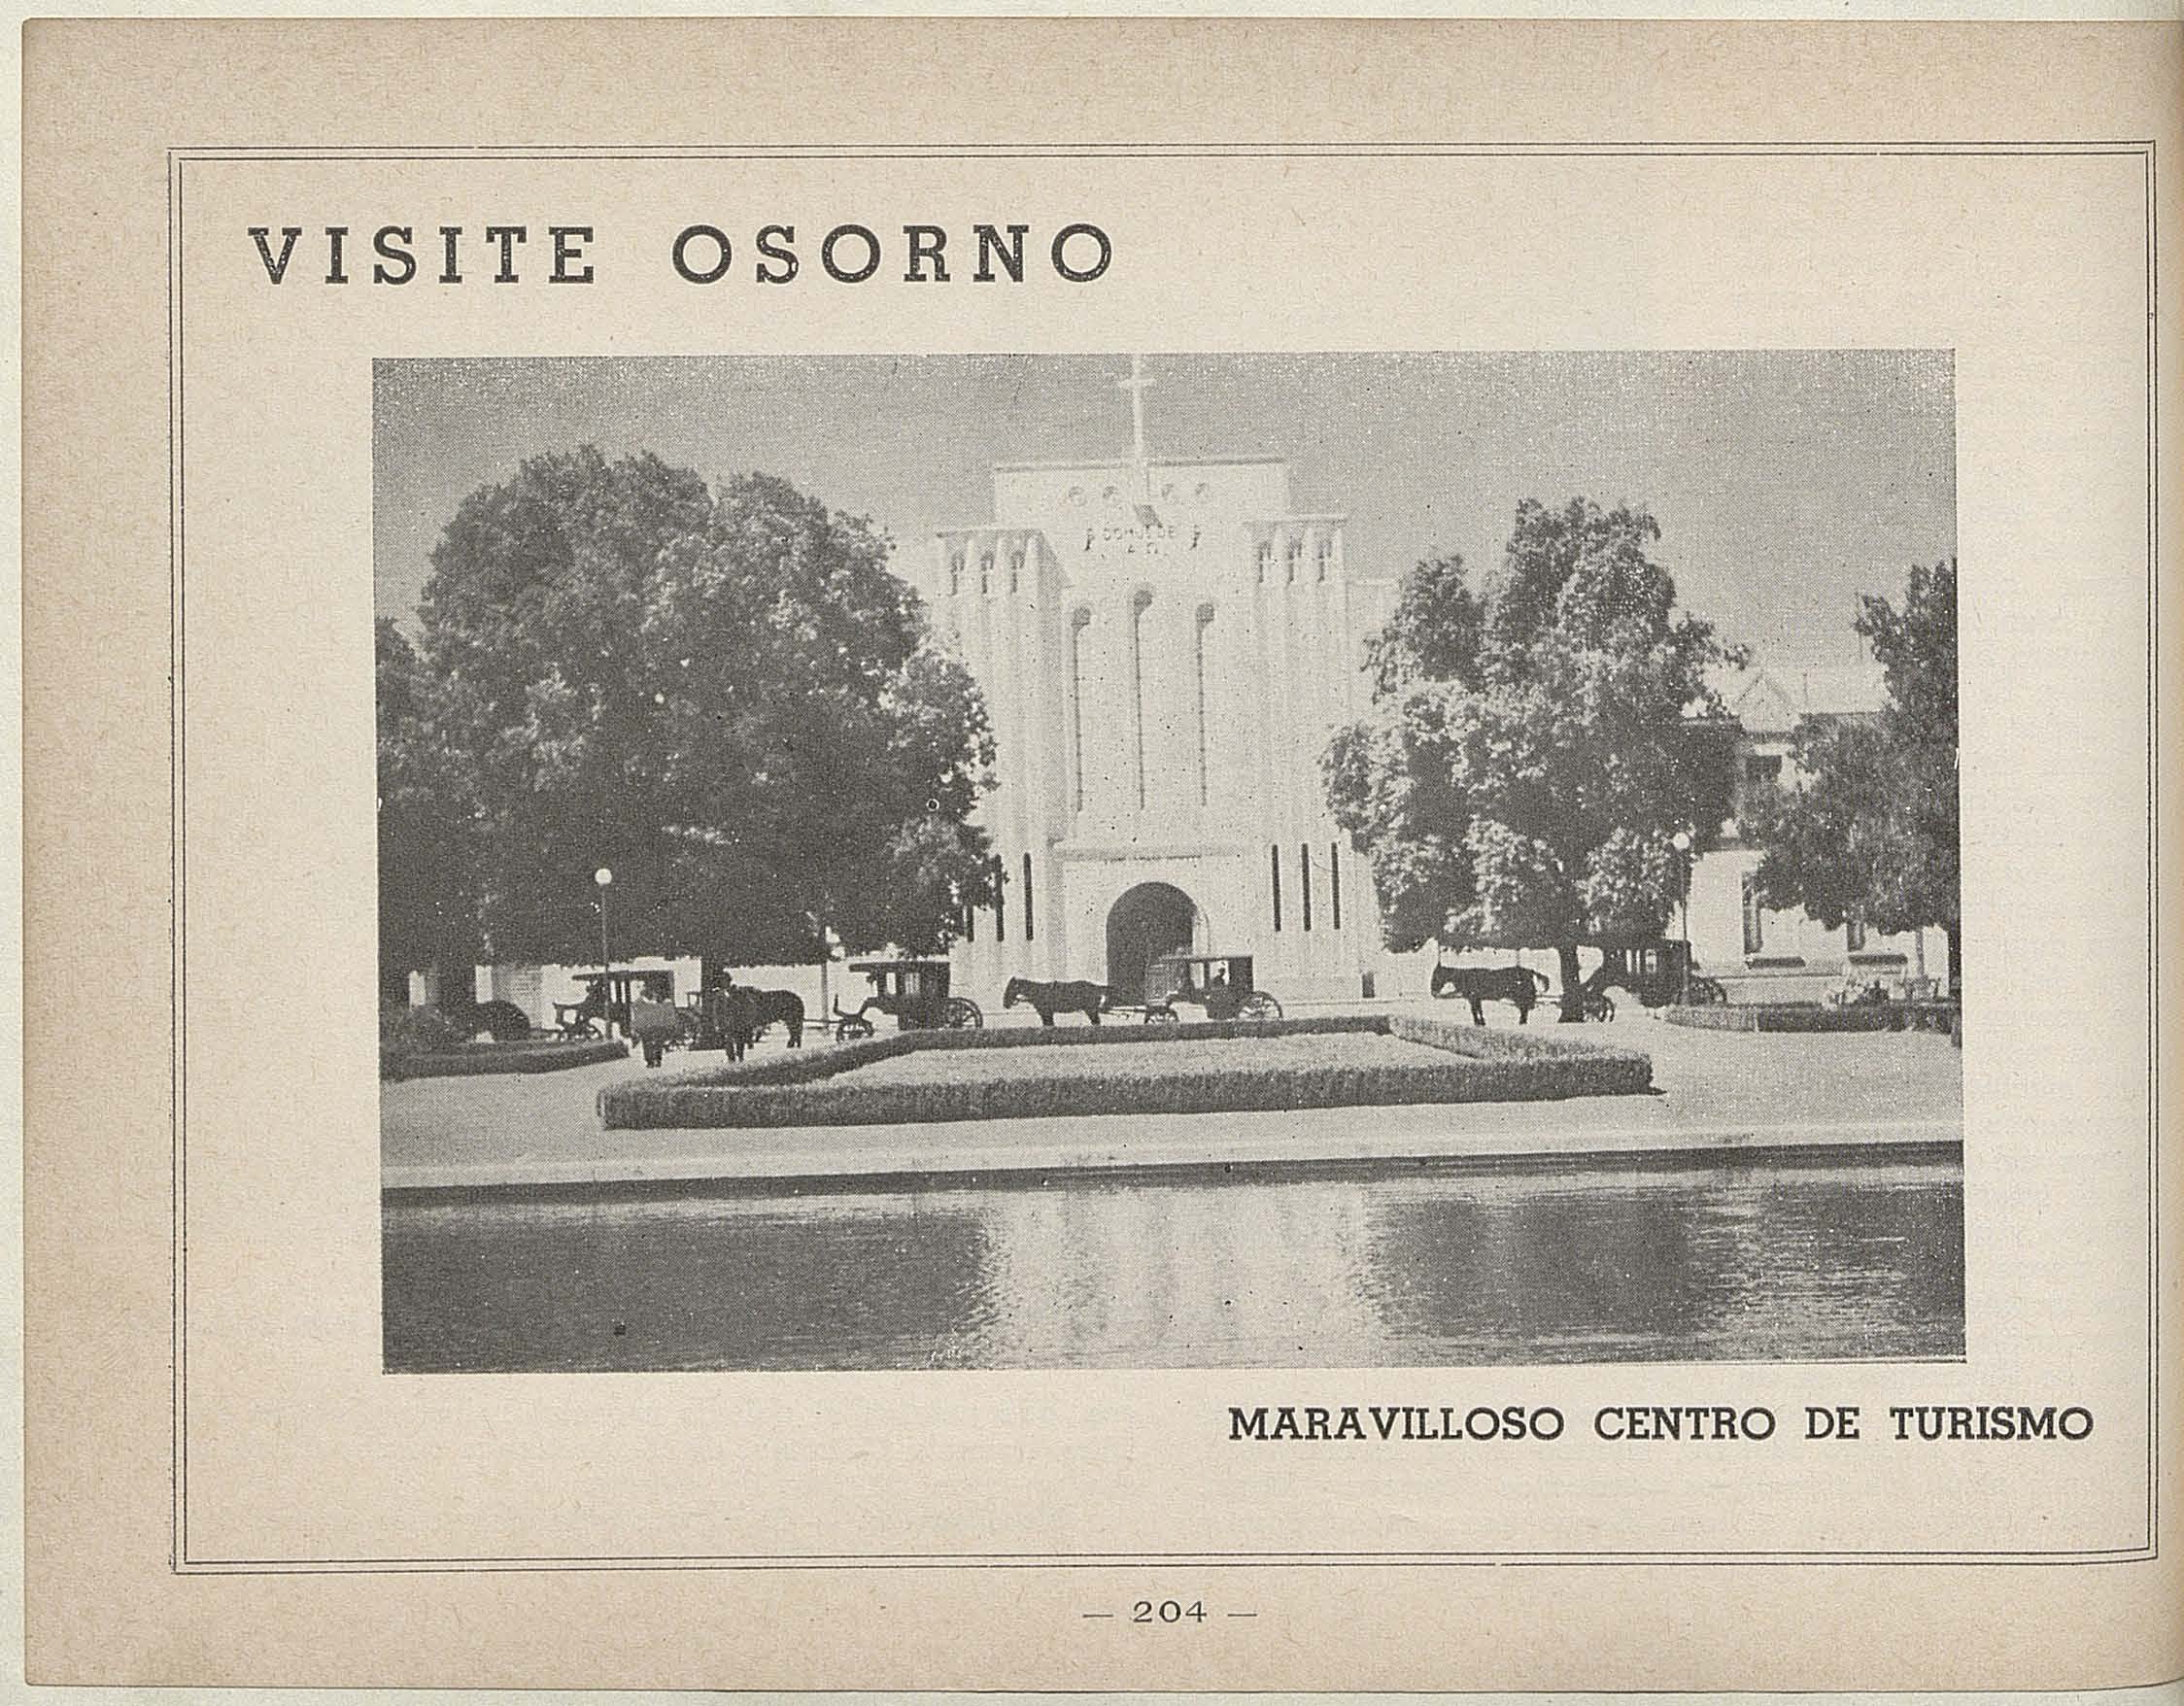 Publicidad de Osorno